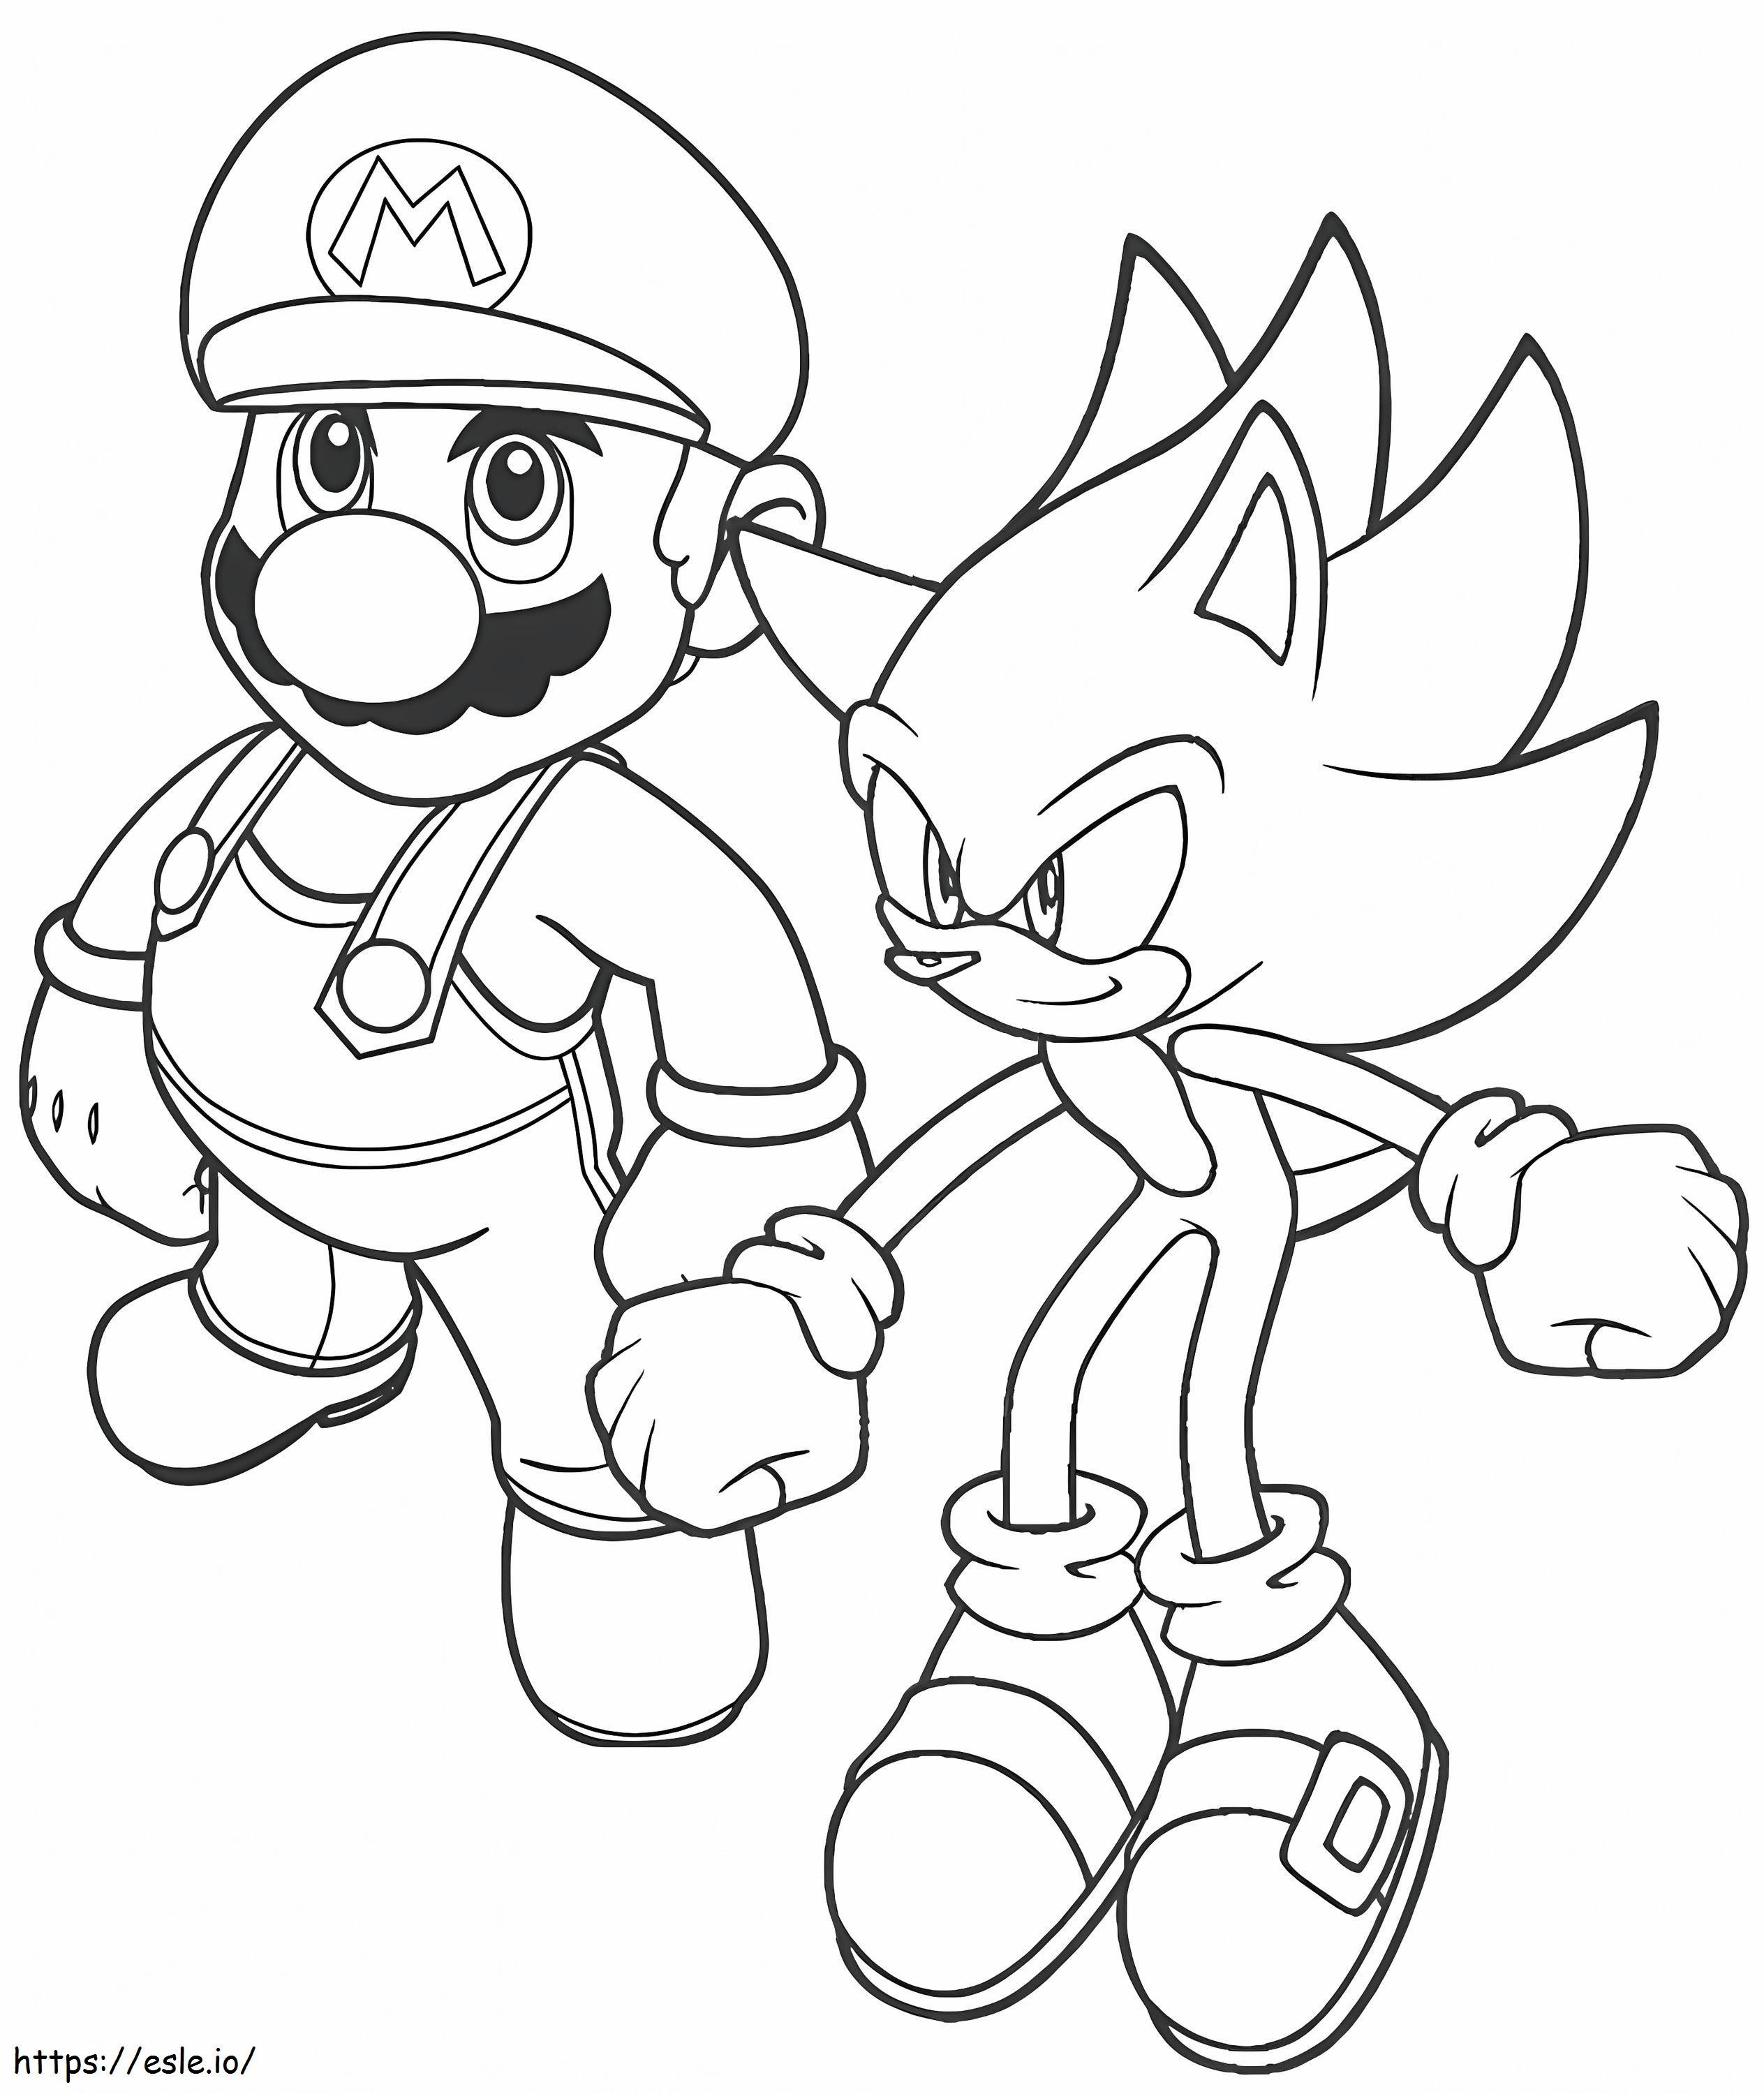  Mario ve Sonik boyama